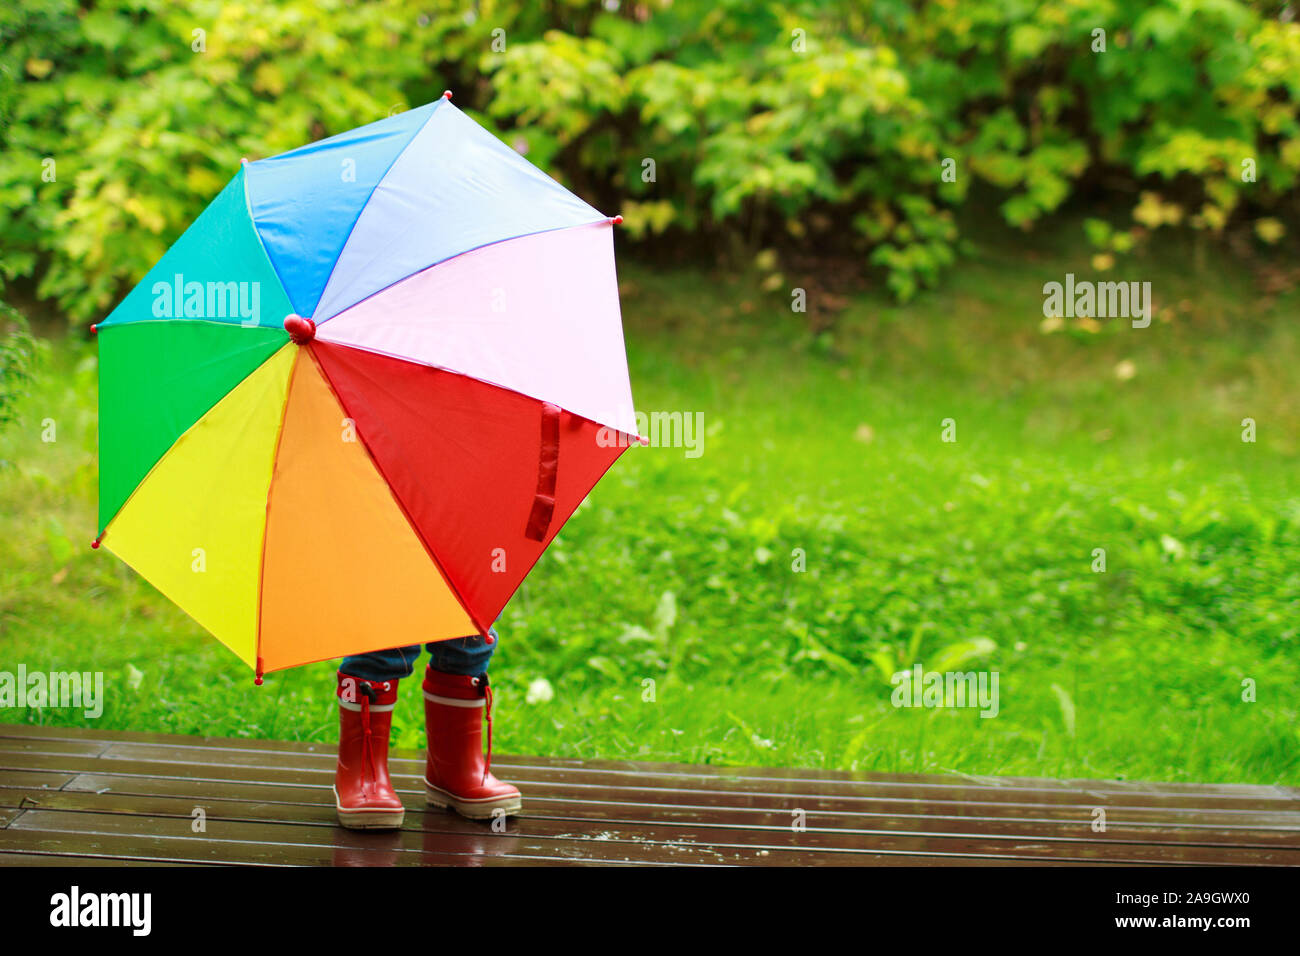 Finnland, kleines Maedchen mit Regenschirm im Regen Banque D'Images